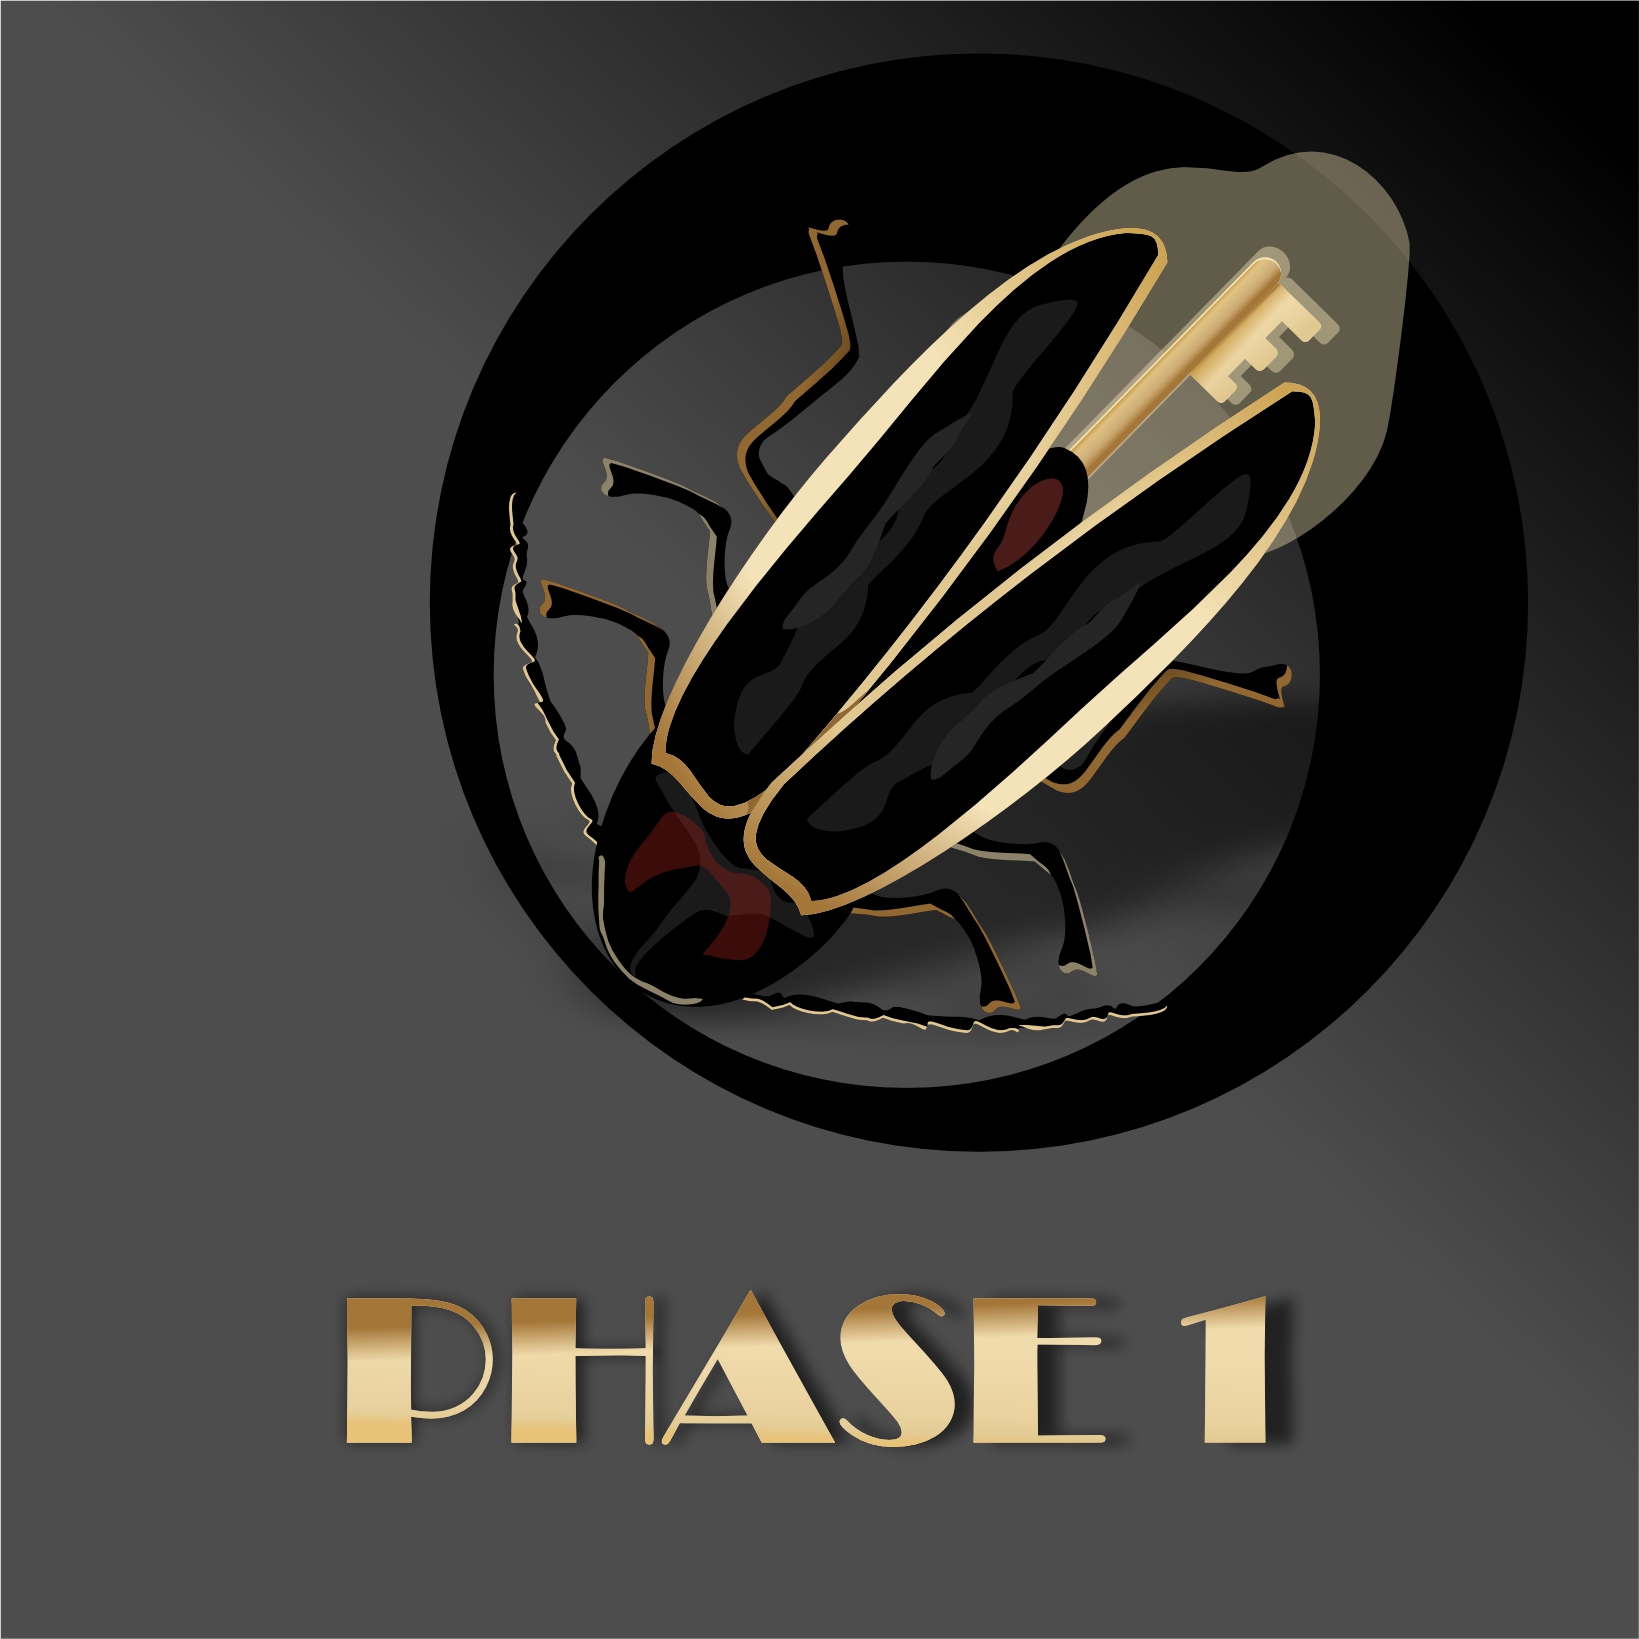 Phase 1 #0001